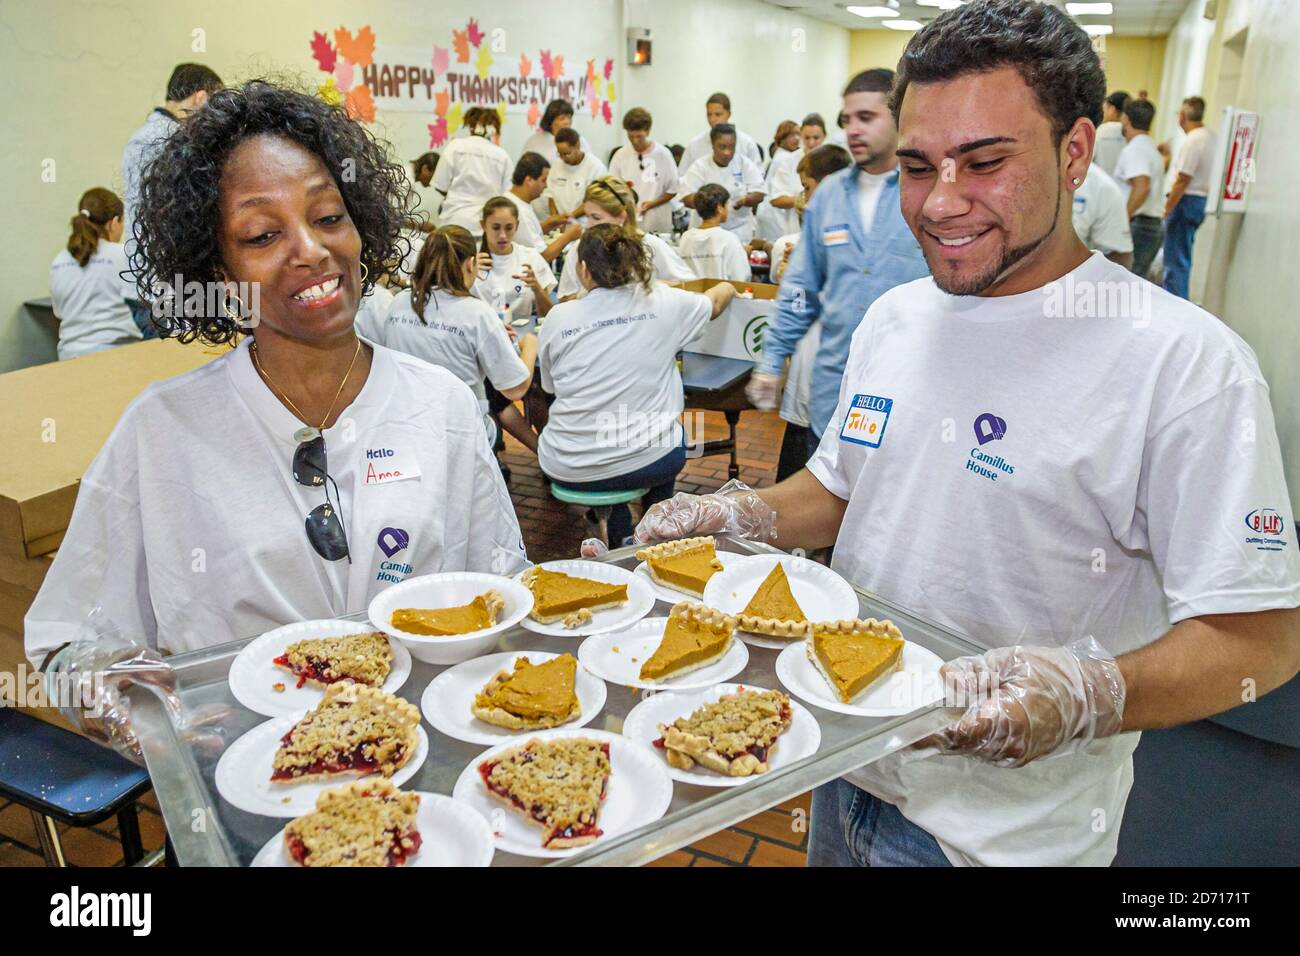 Miami Florida, Camillus House jährliches Thanksgiving-Mittagessen arme Obdachlosenunterkunft, Freiwillige servieren Mahlzeit Mahlzeiten Pie Scheiben, Schwarze Amerikaner Frau fema Stockfoto